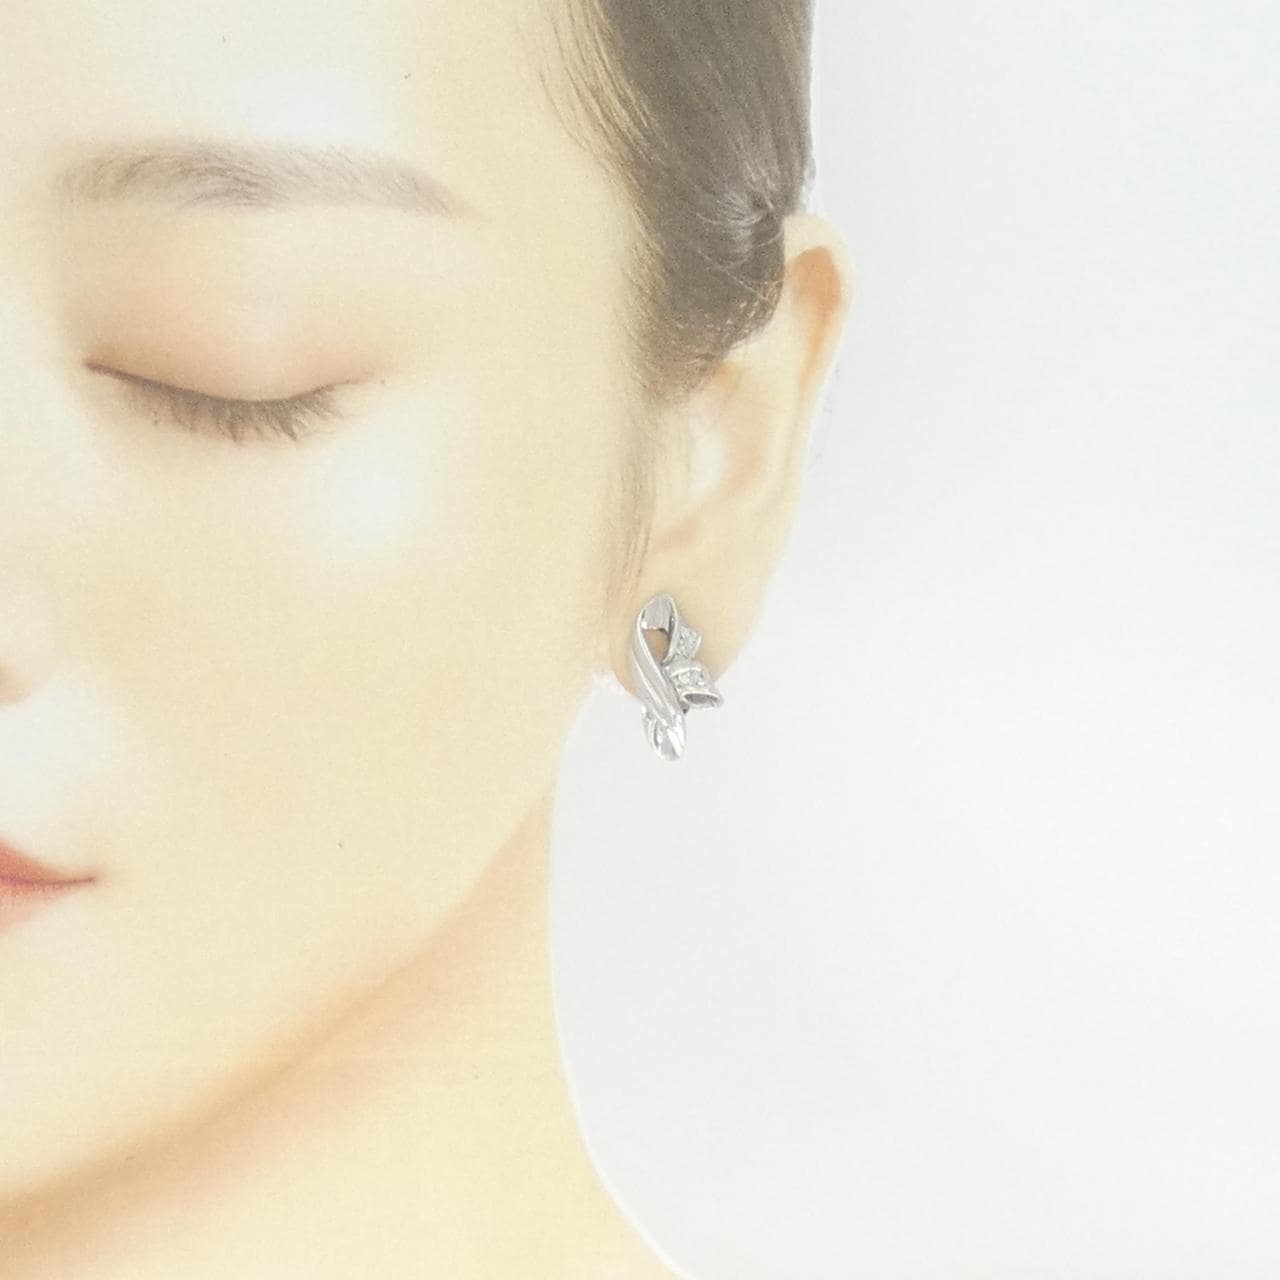 PT Diamond earrings 0.10CT